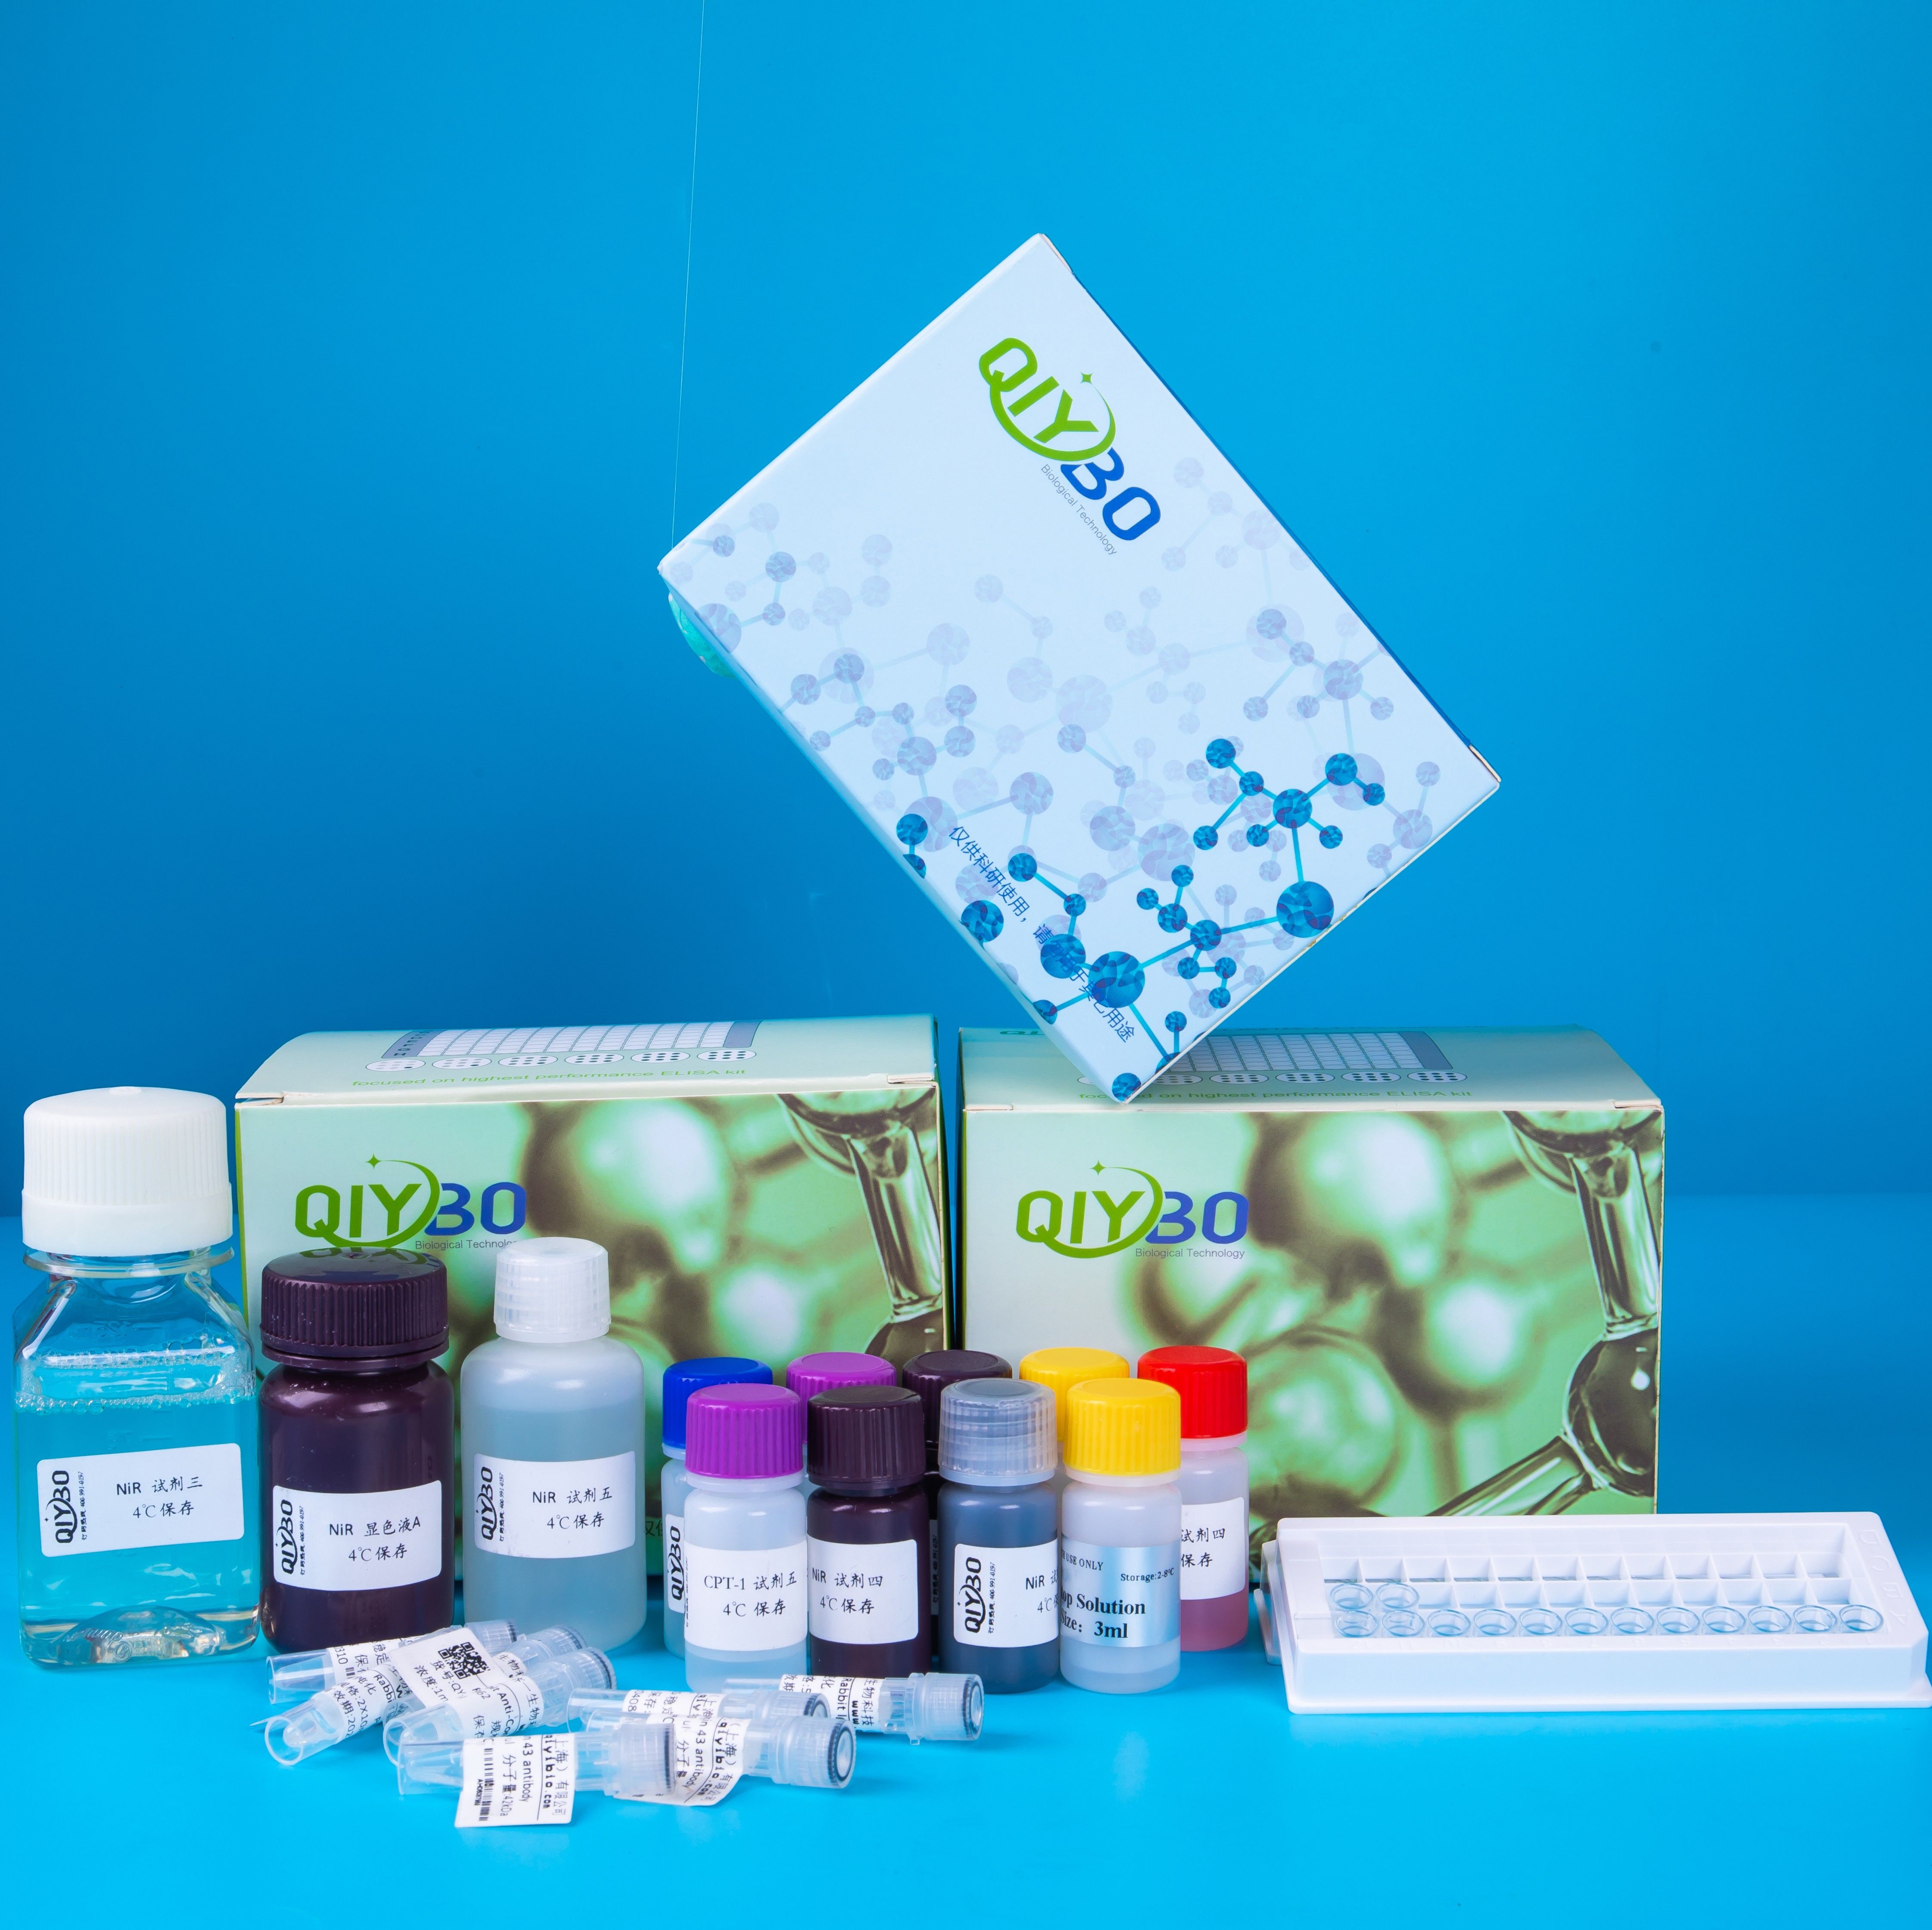 糖原磷酸化酶a(GPa)酶活测定试剂盒